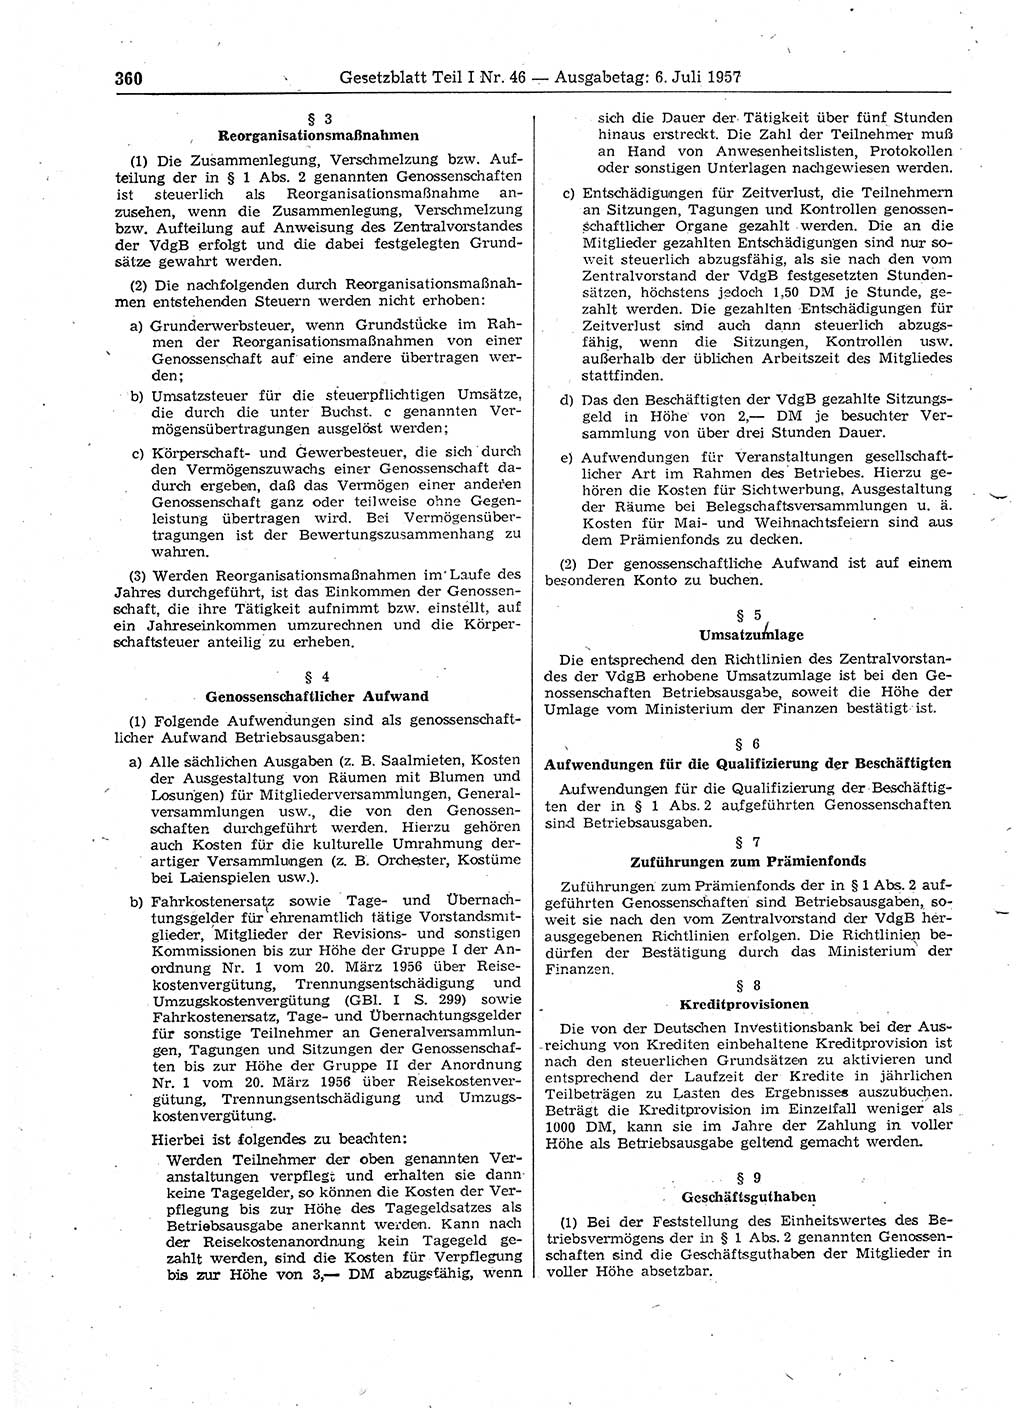 Gesetzblatt (GBl.) der Deutschen Demokratischen Republik (DDR) Teil Ⅰ 1957, Seite 360 (GBl. DDR Ⅰ 1957, S. 360)